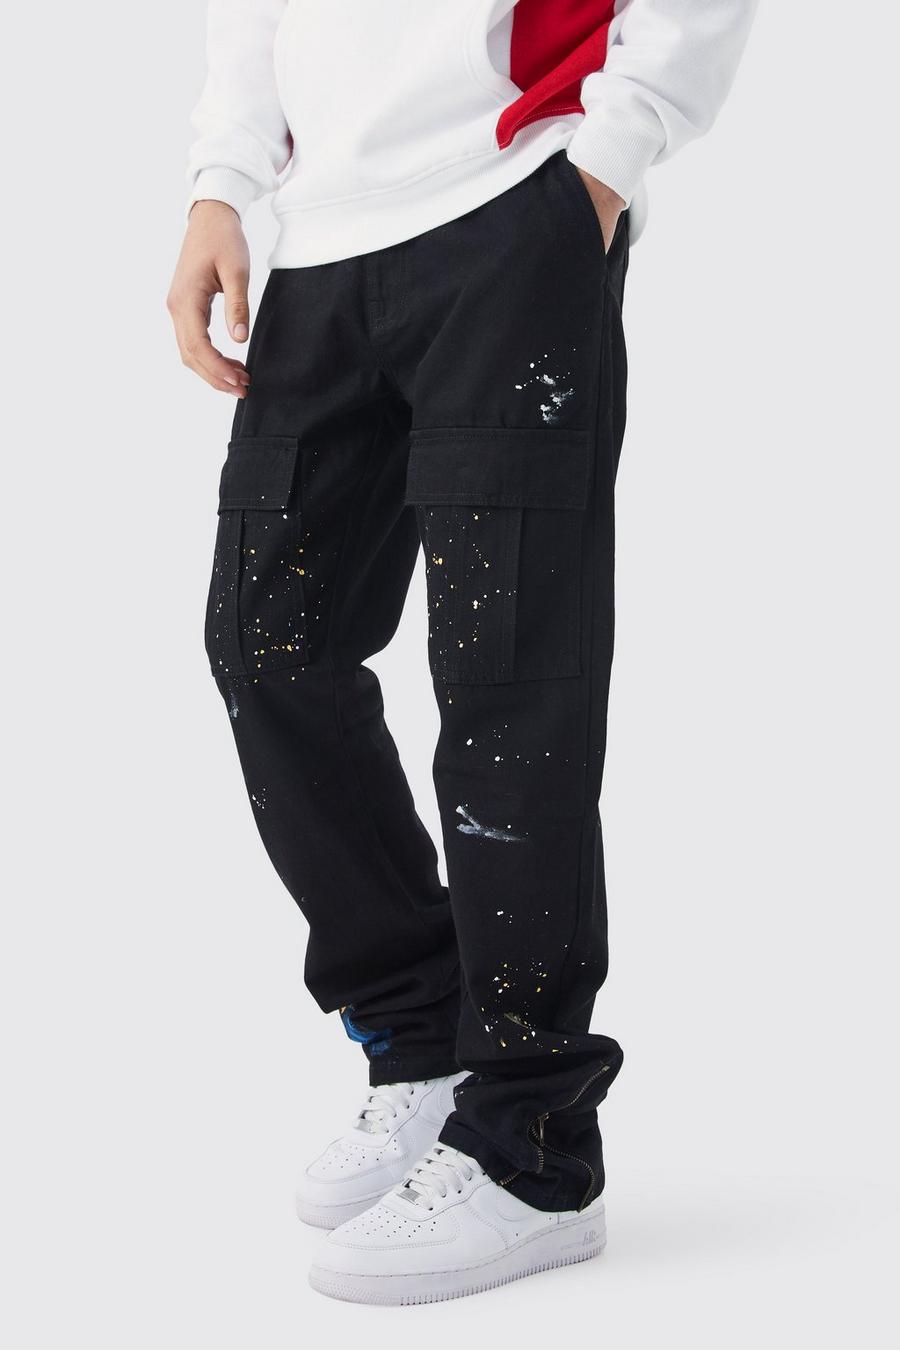 Pantaloni Cargo Slim Fit con zip, pieghe sul fondo e schizzi di colore, Black nero